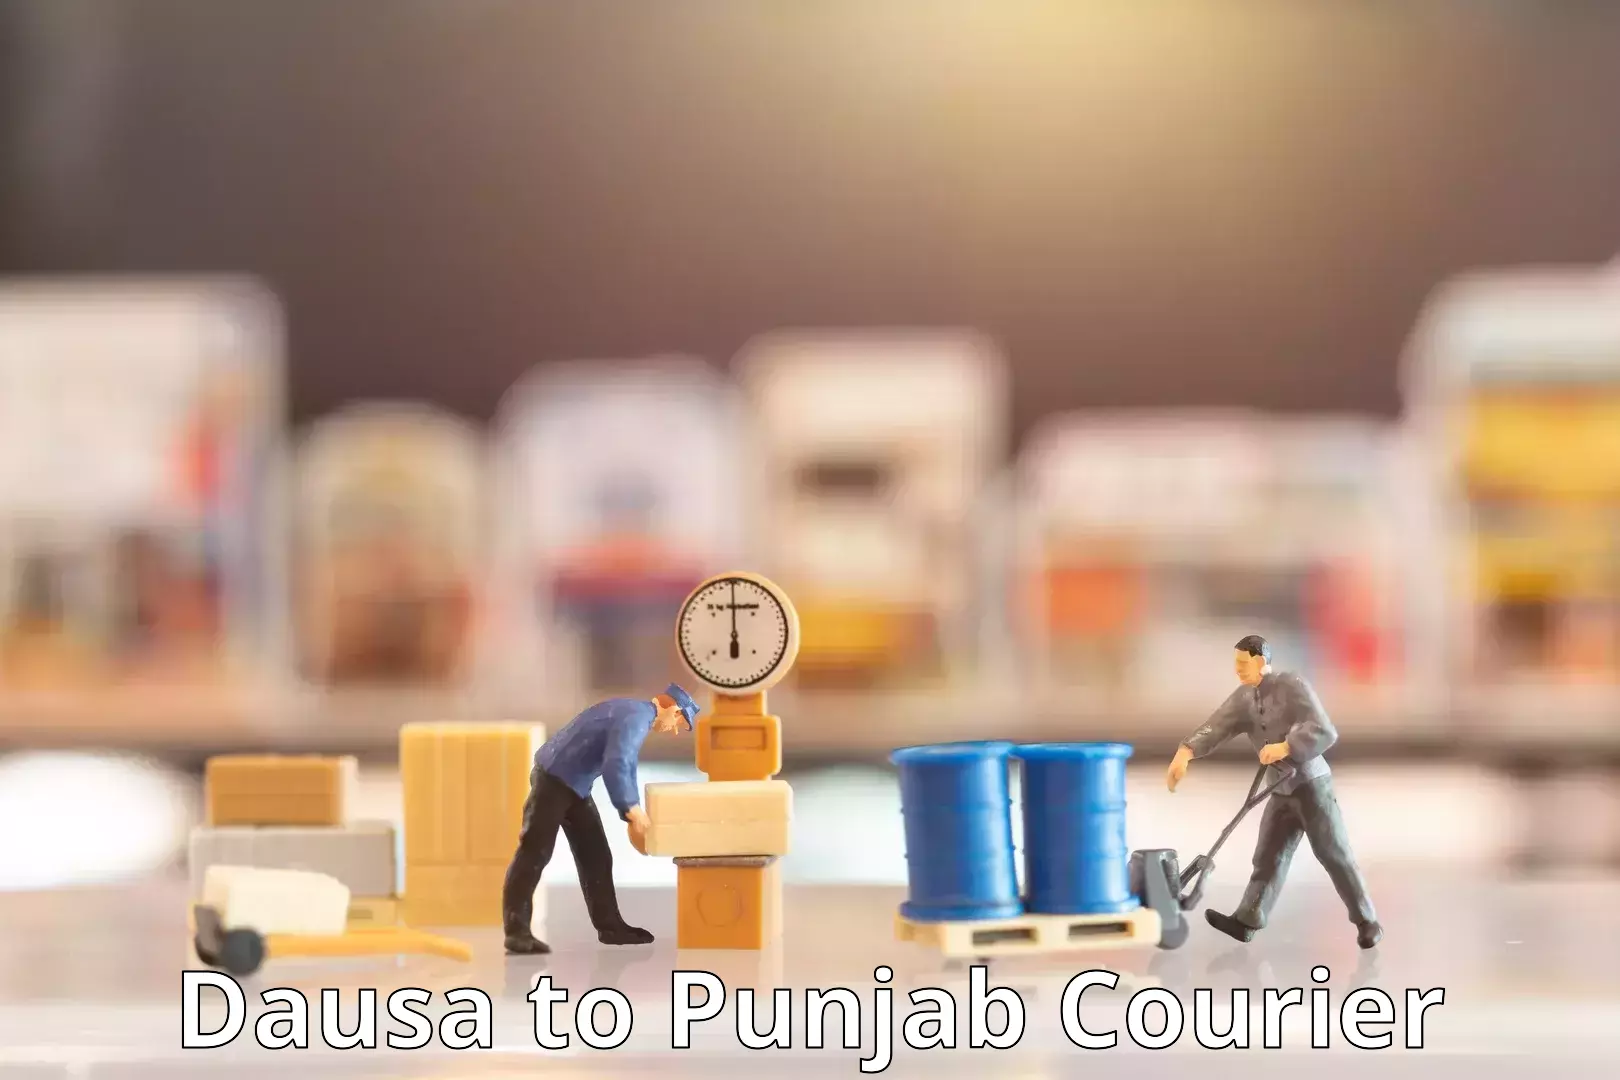 Courier app Dausa to Punjab